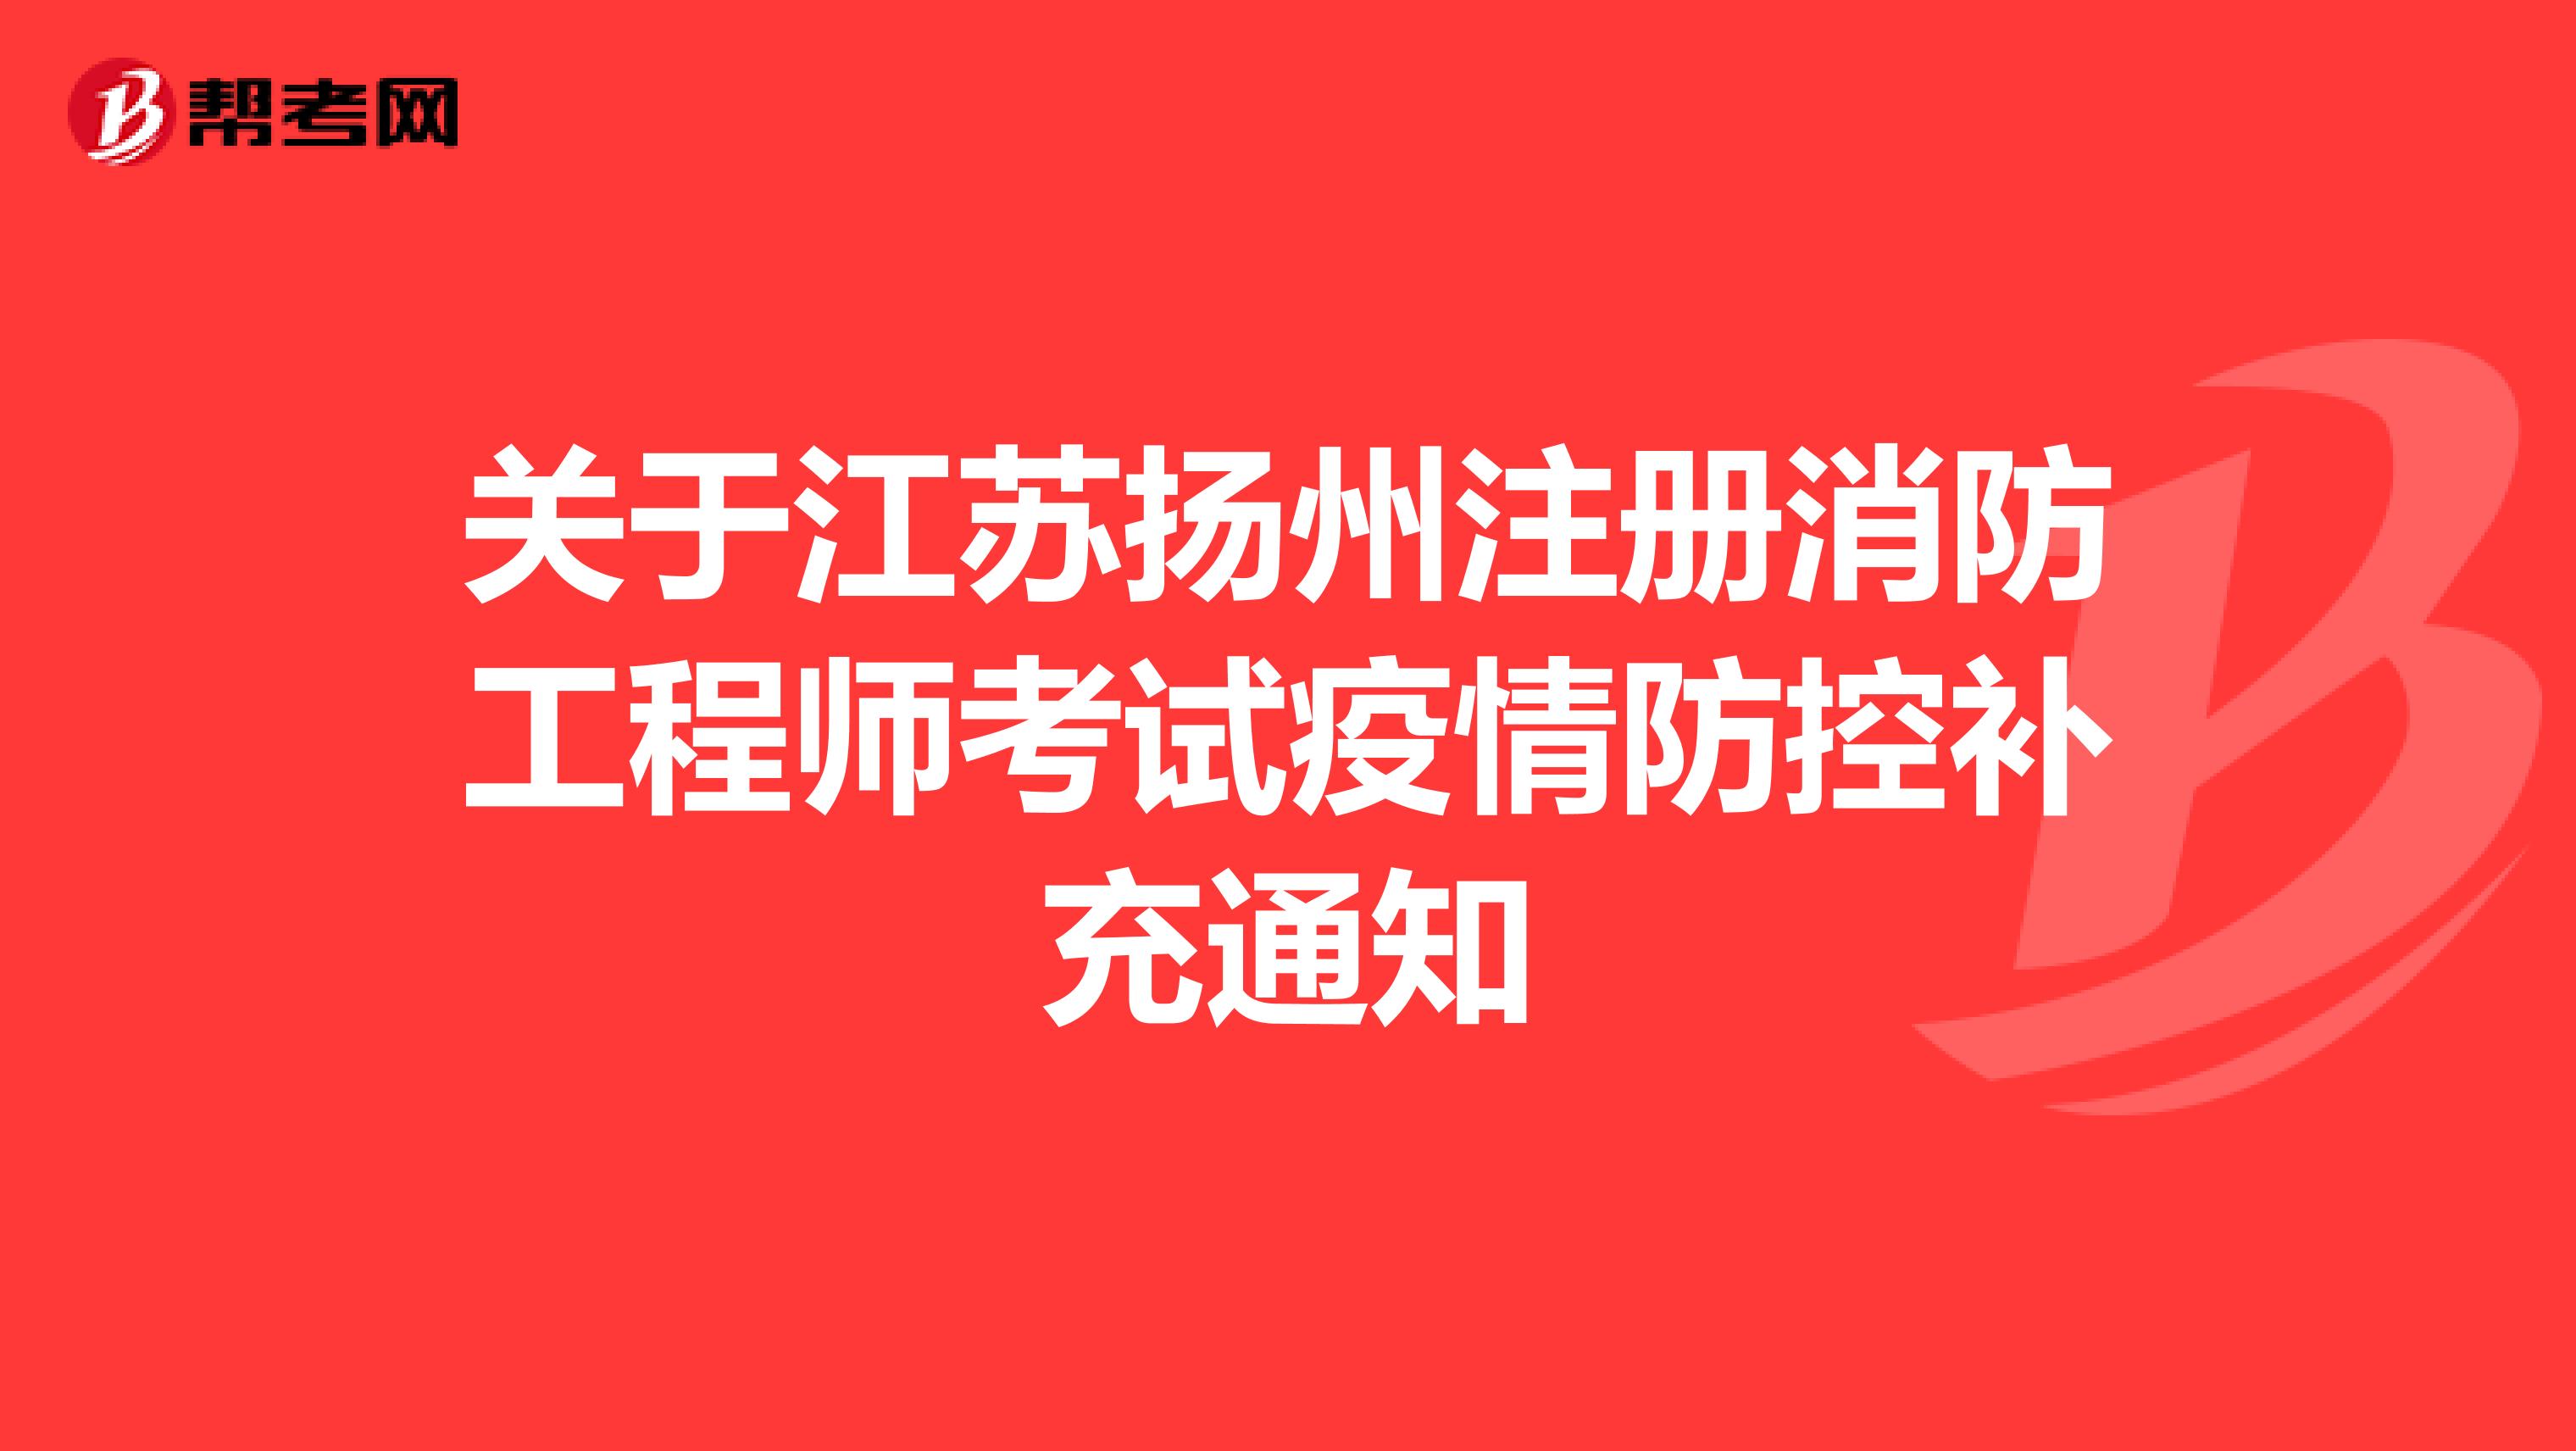 关于江苏扬州注册消防工程师考试疫情防控补充通知